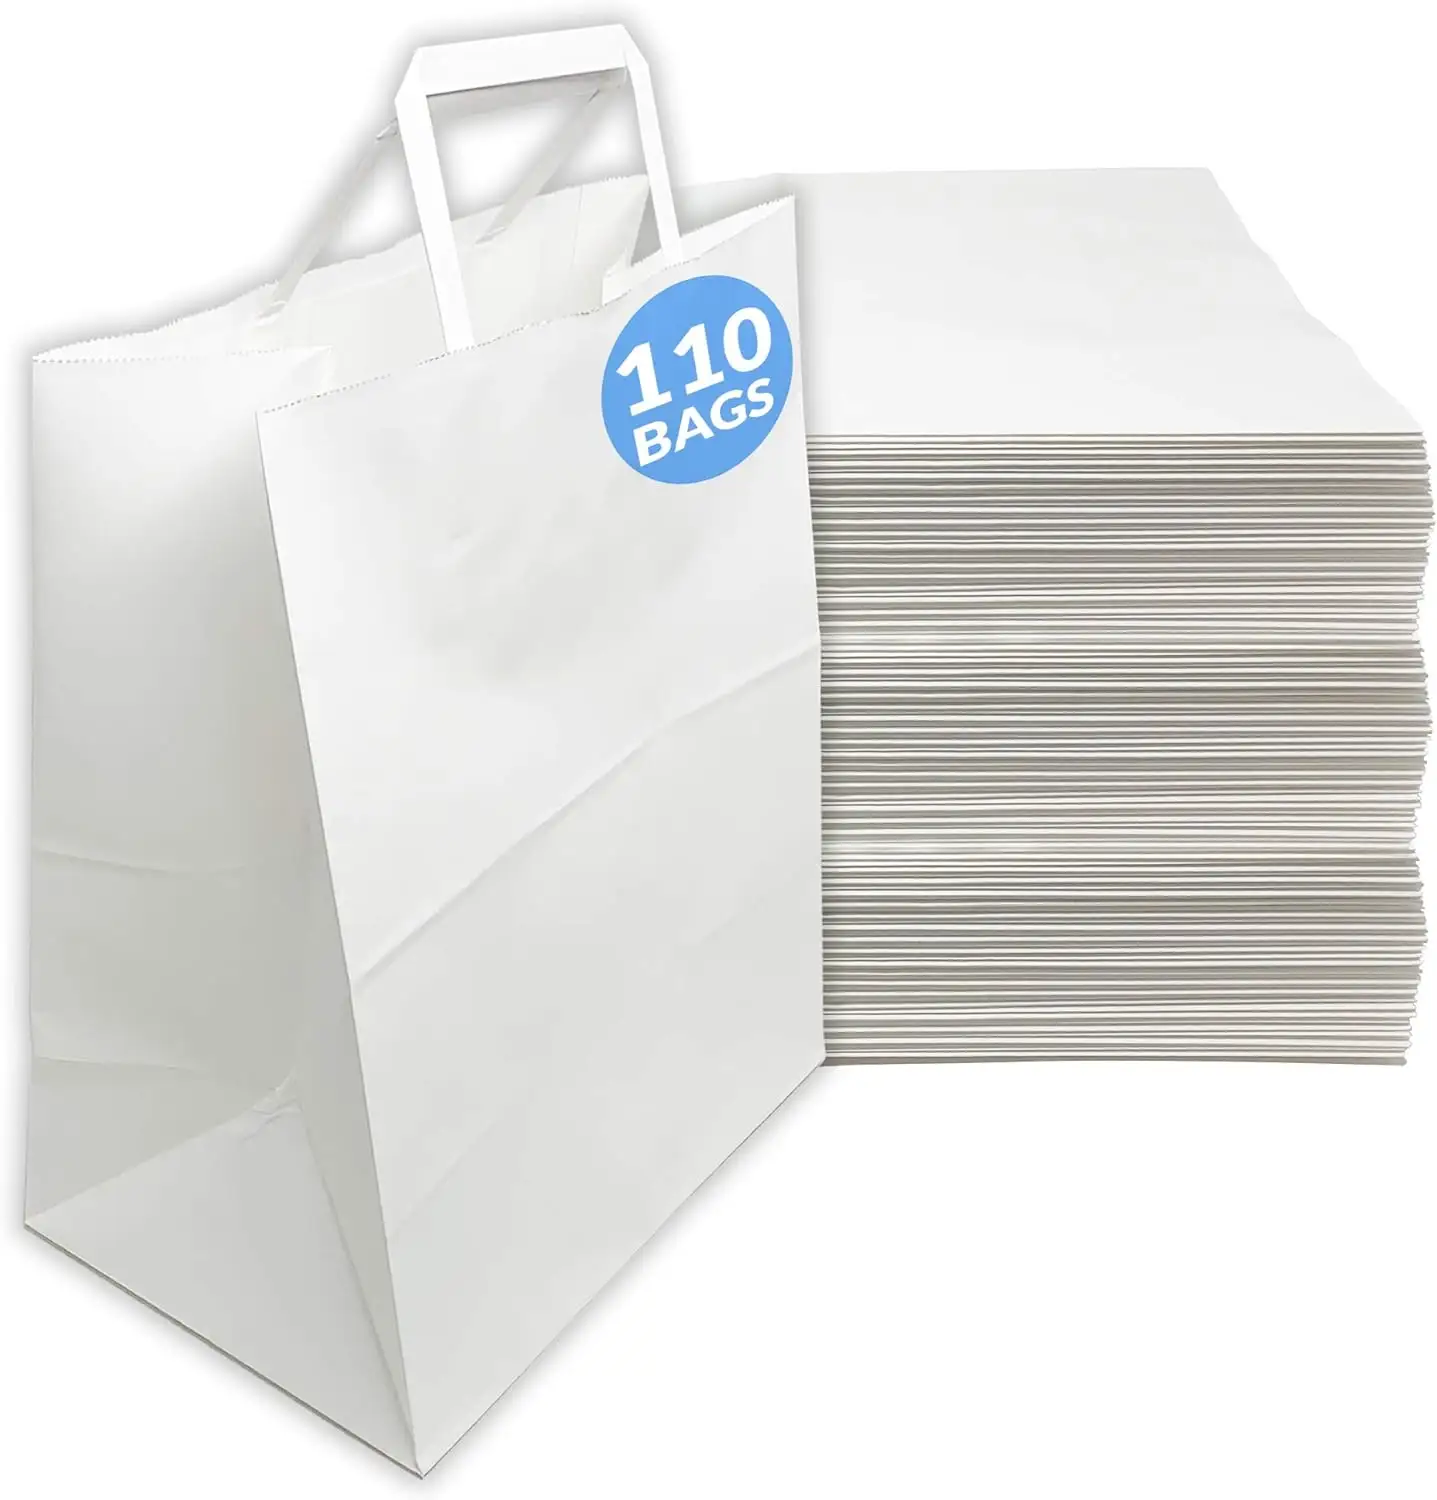 Yeni varış alışveriş hediye çantası gıda çanta kahverengi çıkar/beyaz kraft kağıt düz kolları özel logo